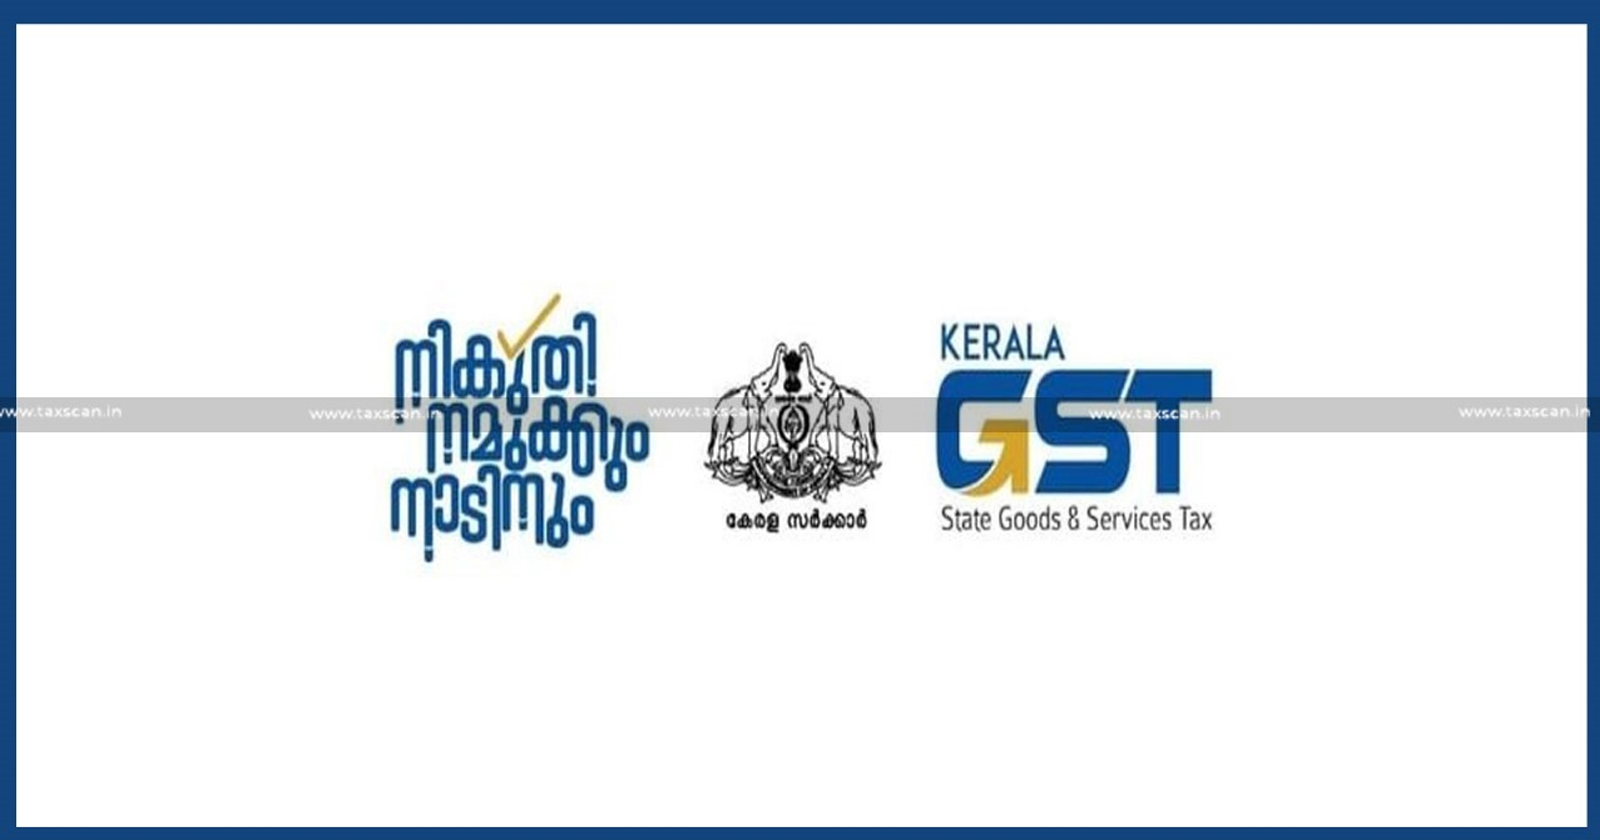 GST - Kerala GST - Kerala GST Enforcement Wing - GST Enforcement Wing - taxscan